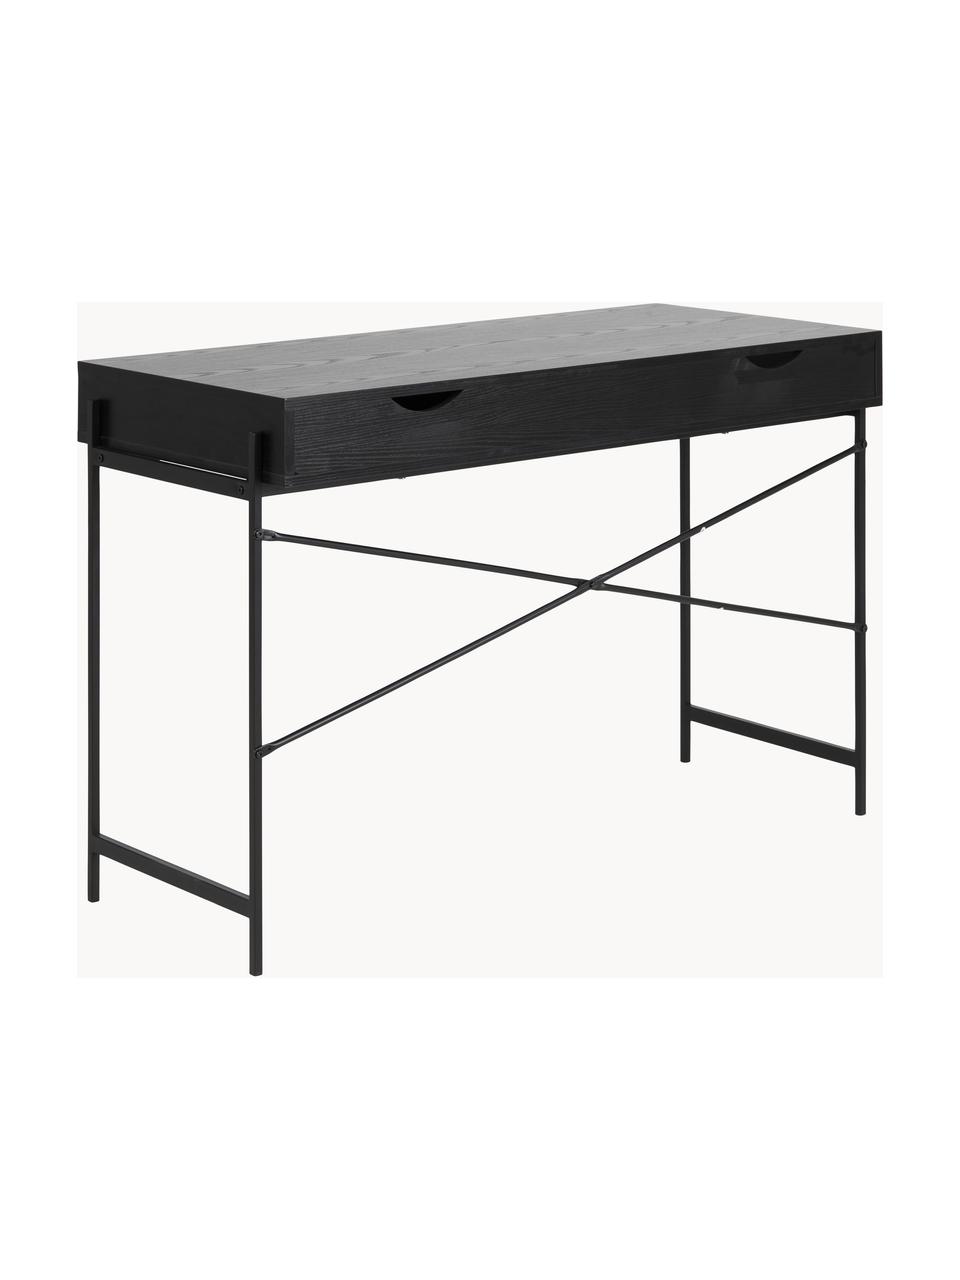 Úzký psací stůl Angus, Černá, Š 110 cm, H 50 cm